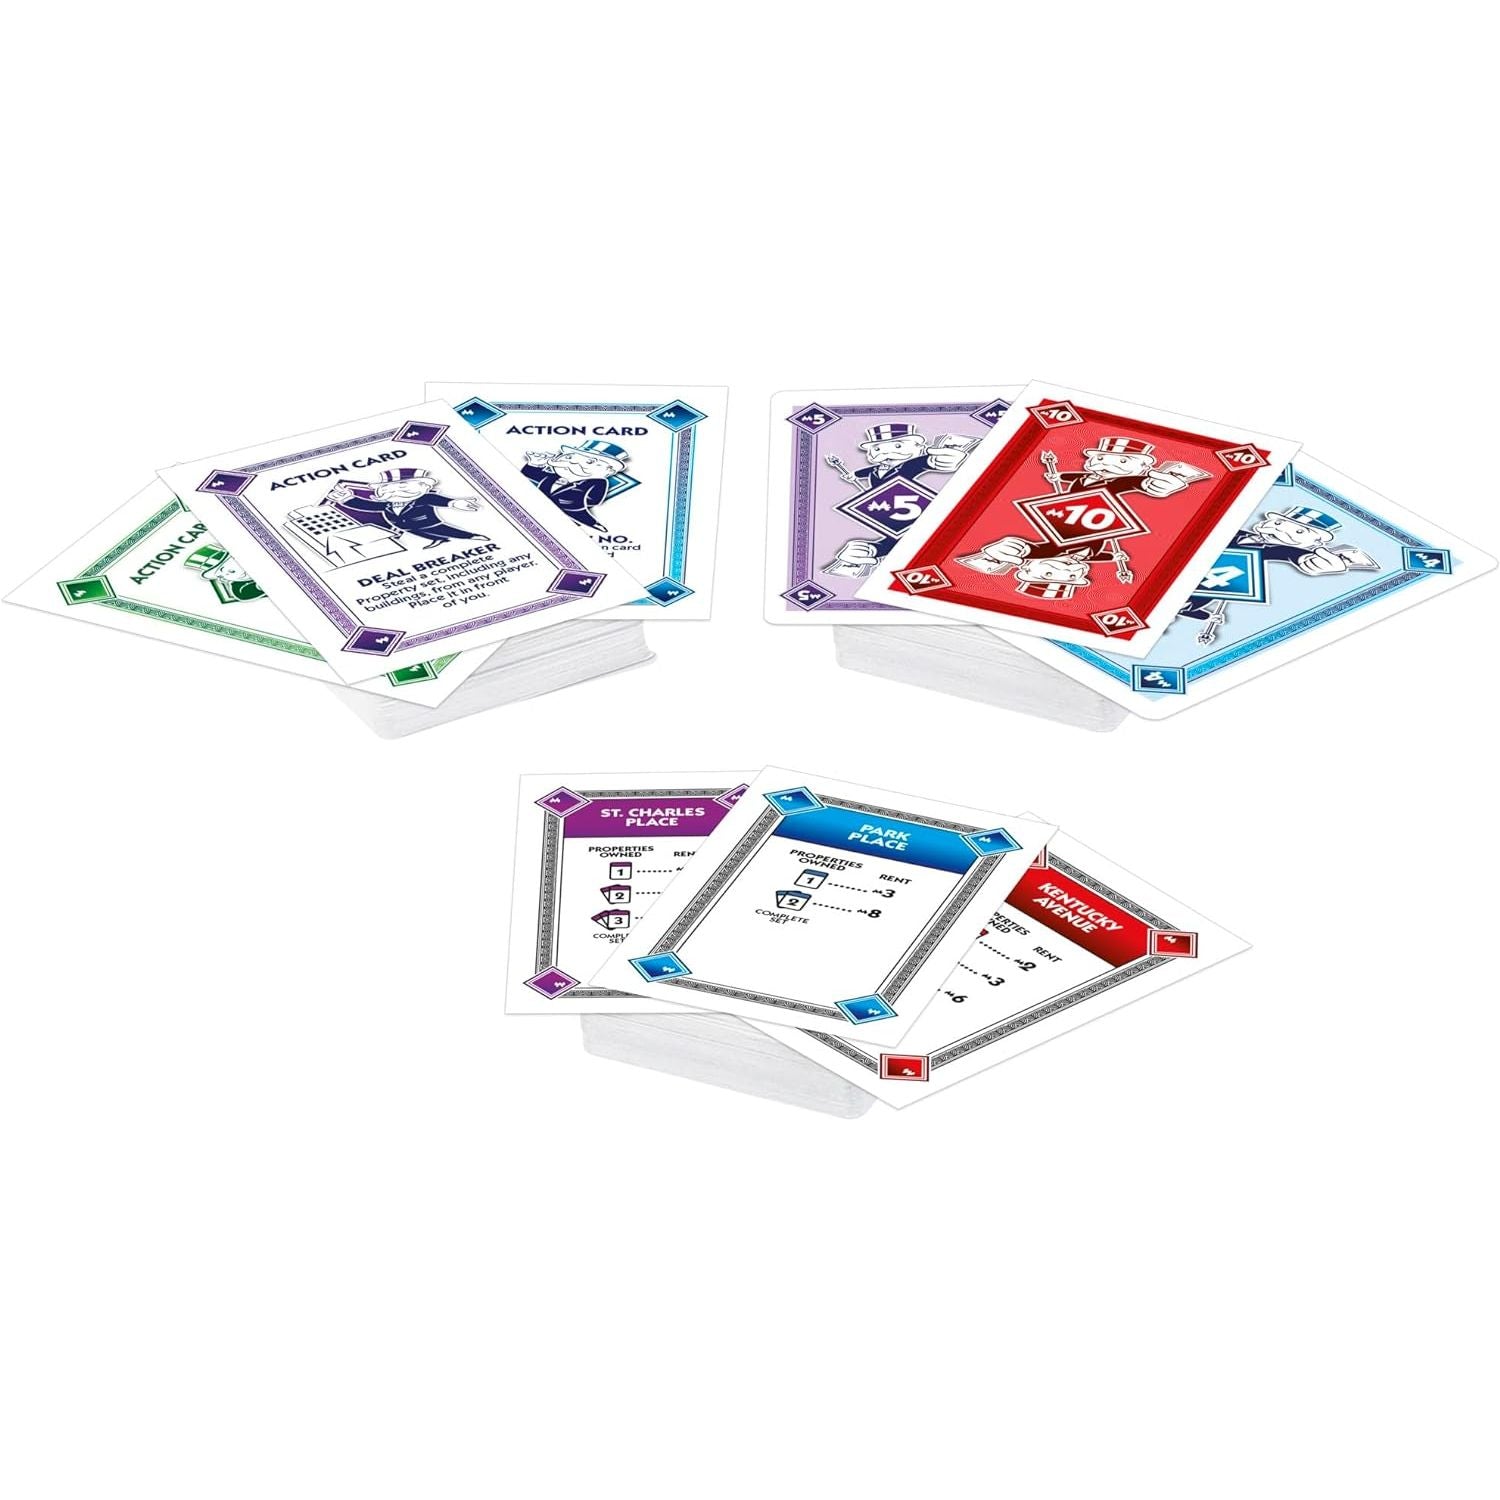 لعبة بطاقات اللعب السريع مونوبولي ديل للعائلات والأطفال من سن 8 سنوات فما فوق ومن 2 إلى 5 لاعبين